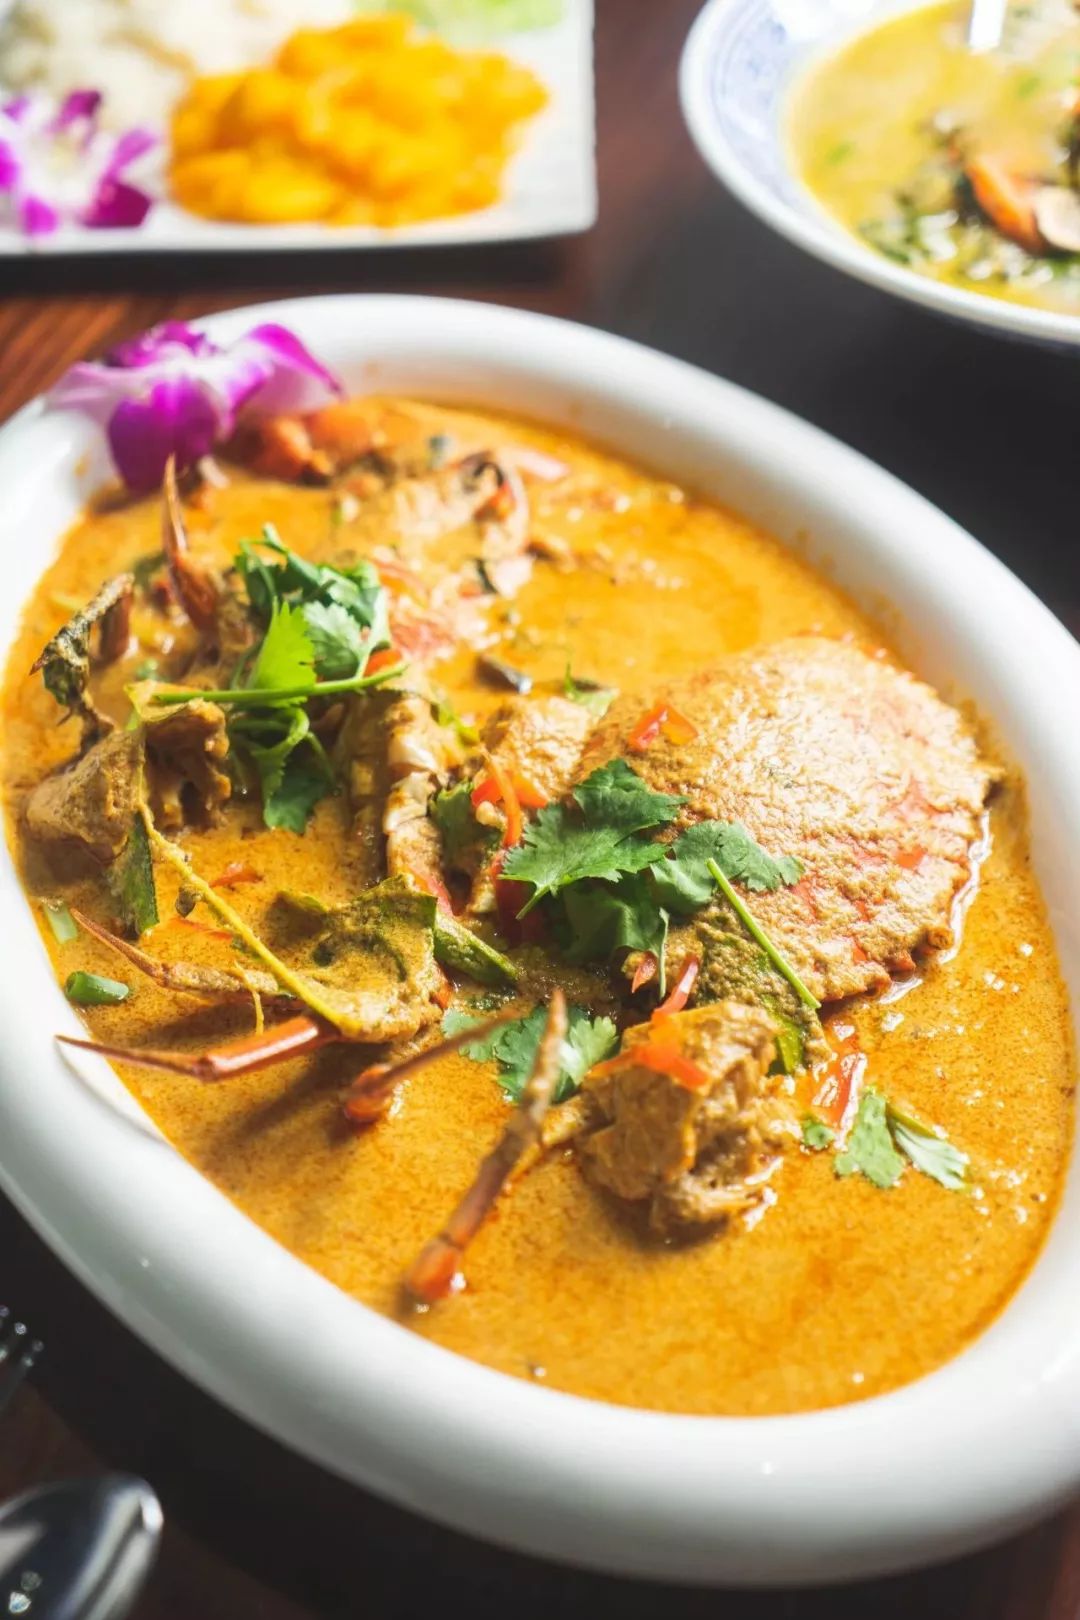 你知道吗?深圳最好吃的泰国私房菜,藏在罗湖的